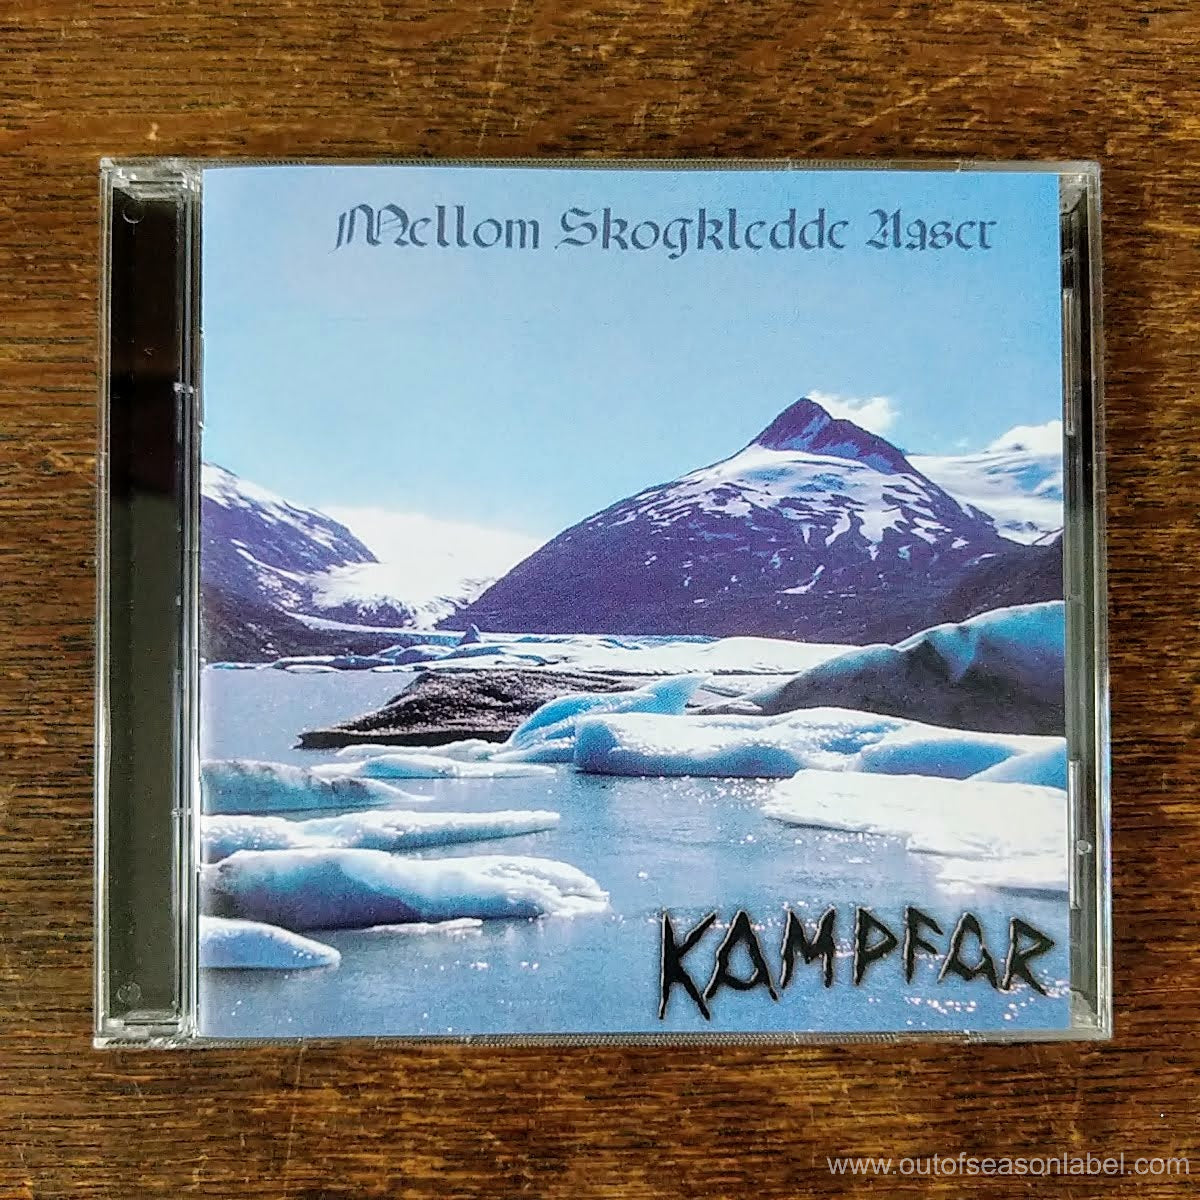 [SOLD OUT] KAMPFAR "Mellom Skogledde Aaser" CD